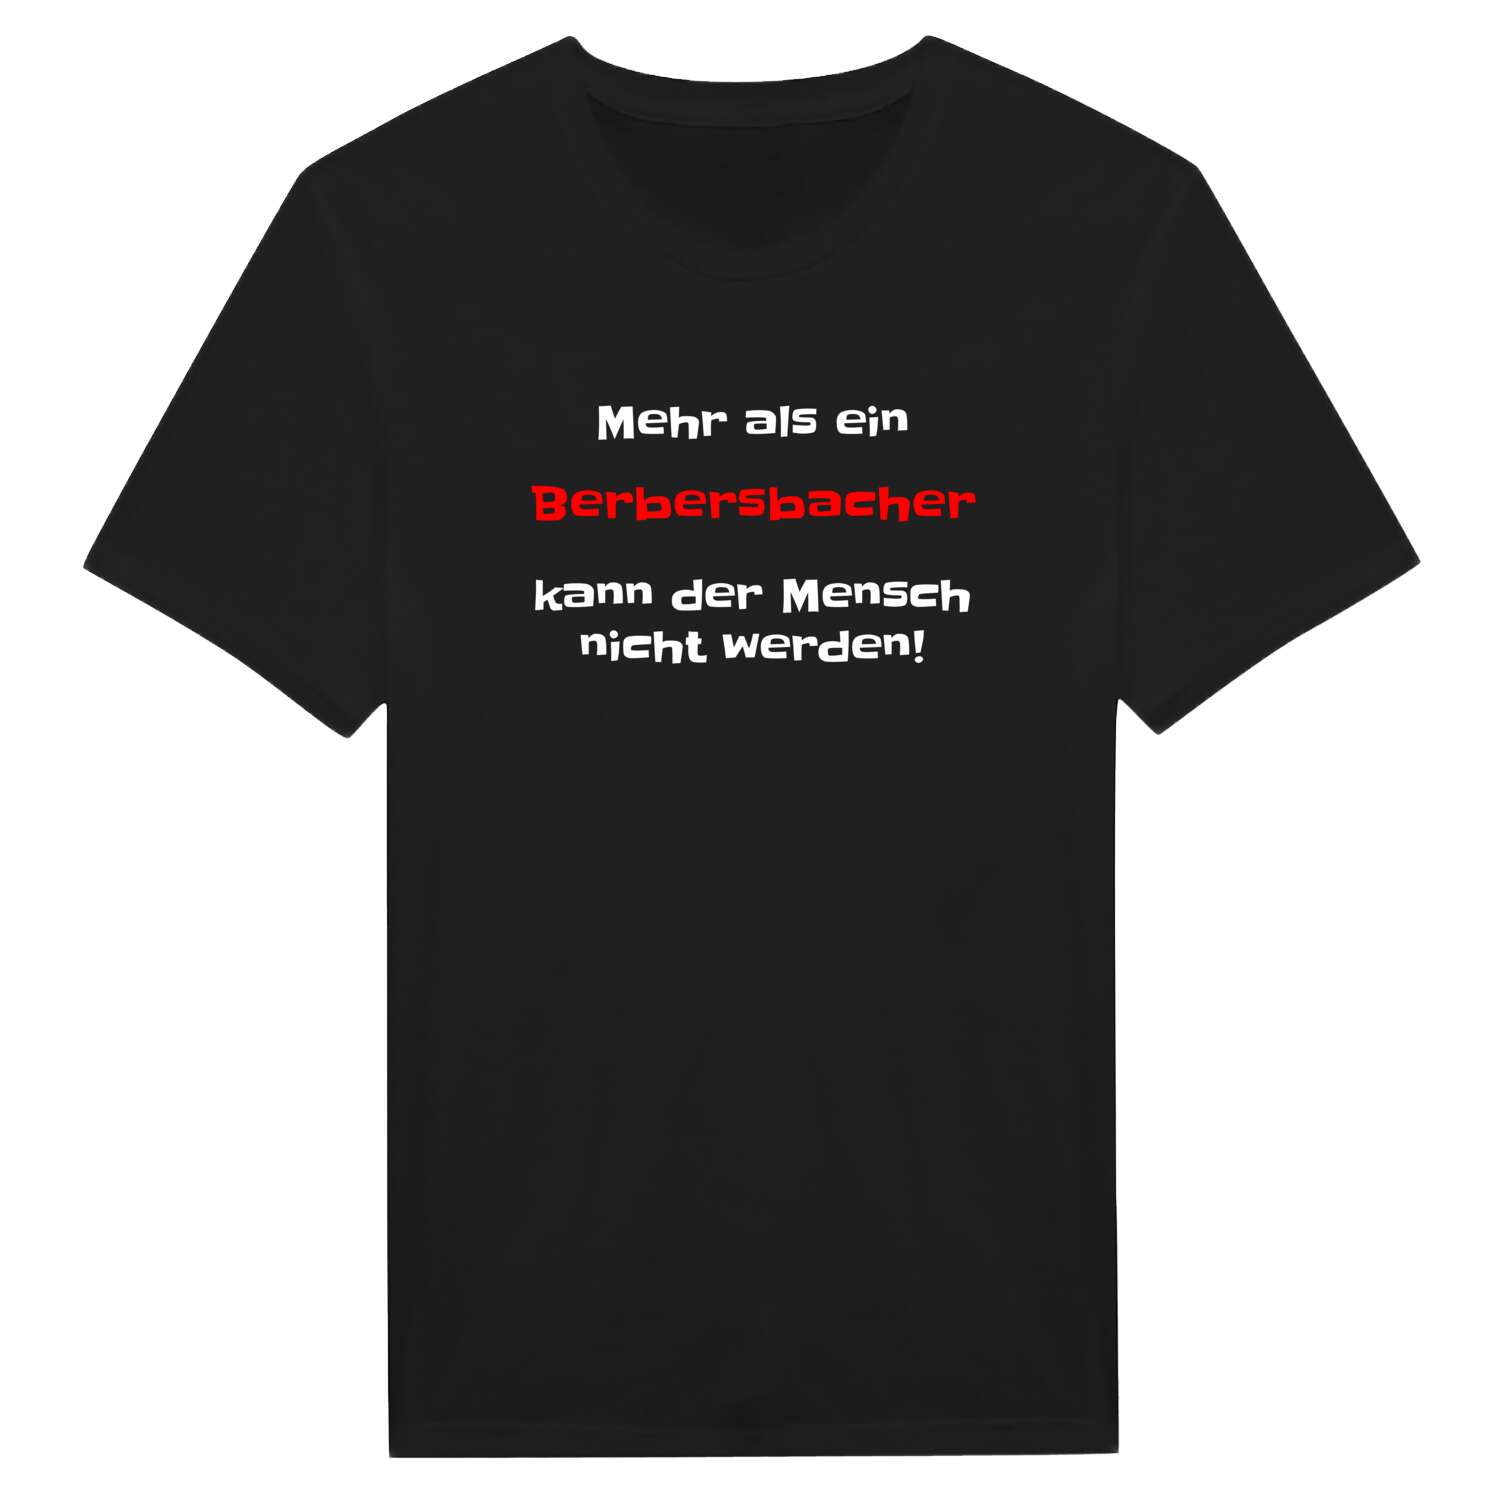 Berbersbach T-Shirt »Mehr als ein«